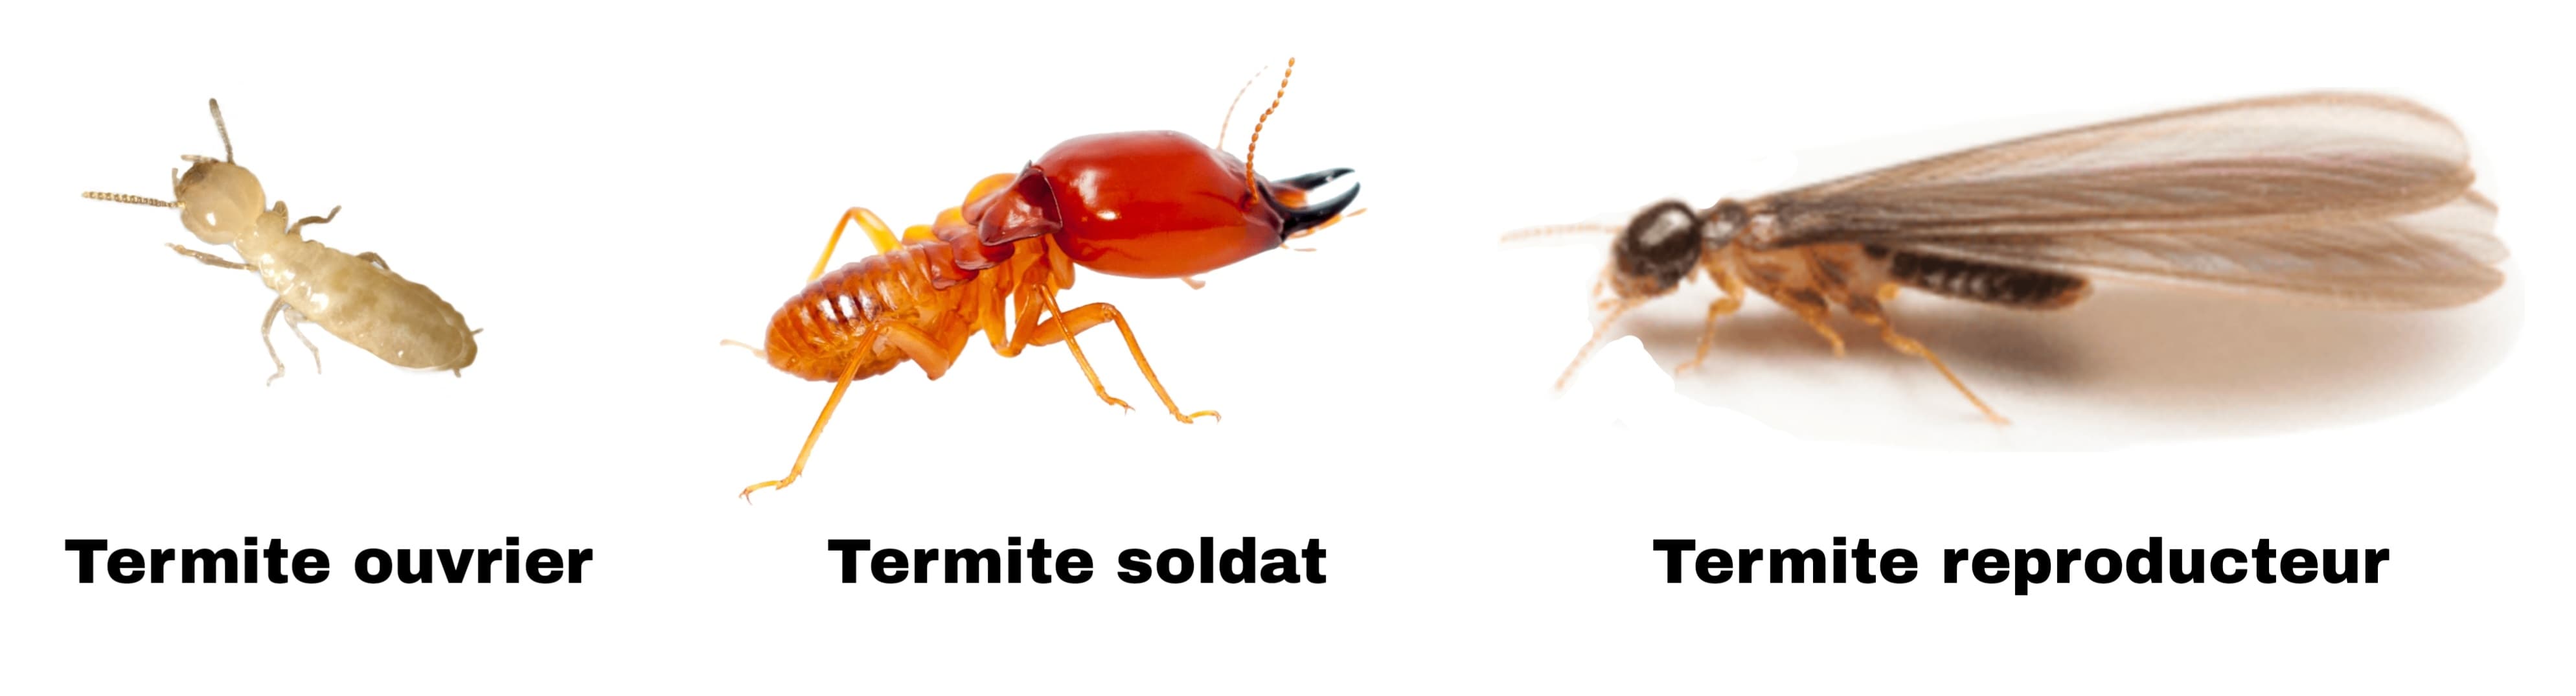 Les 3 différents types de termites